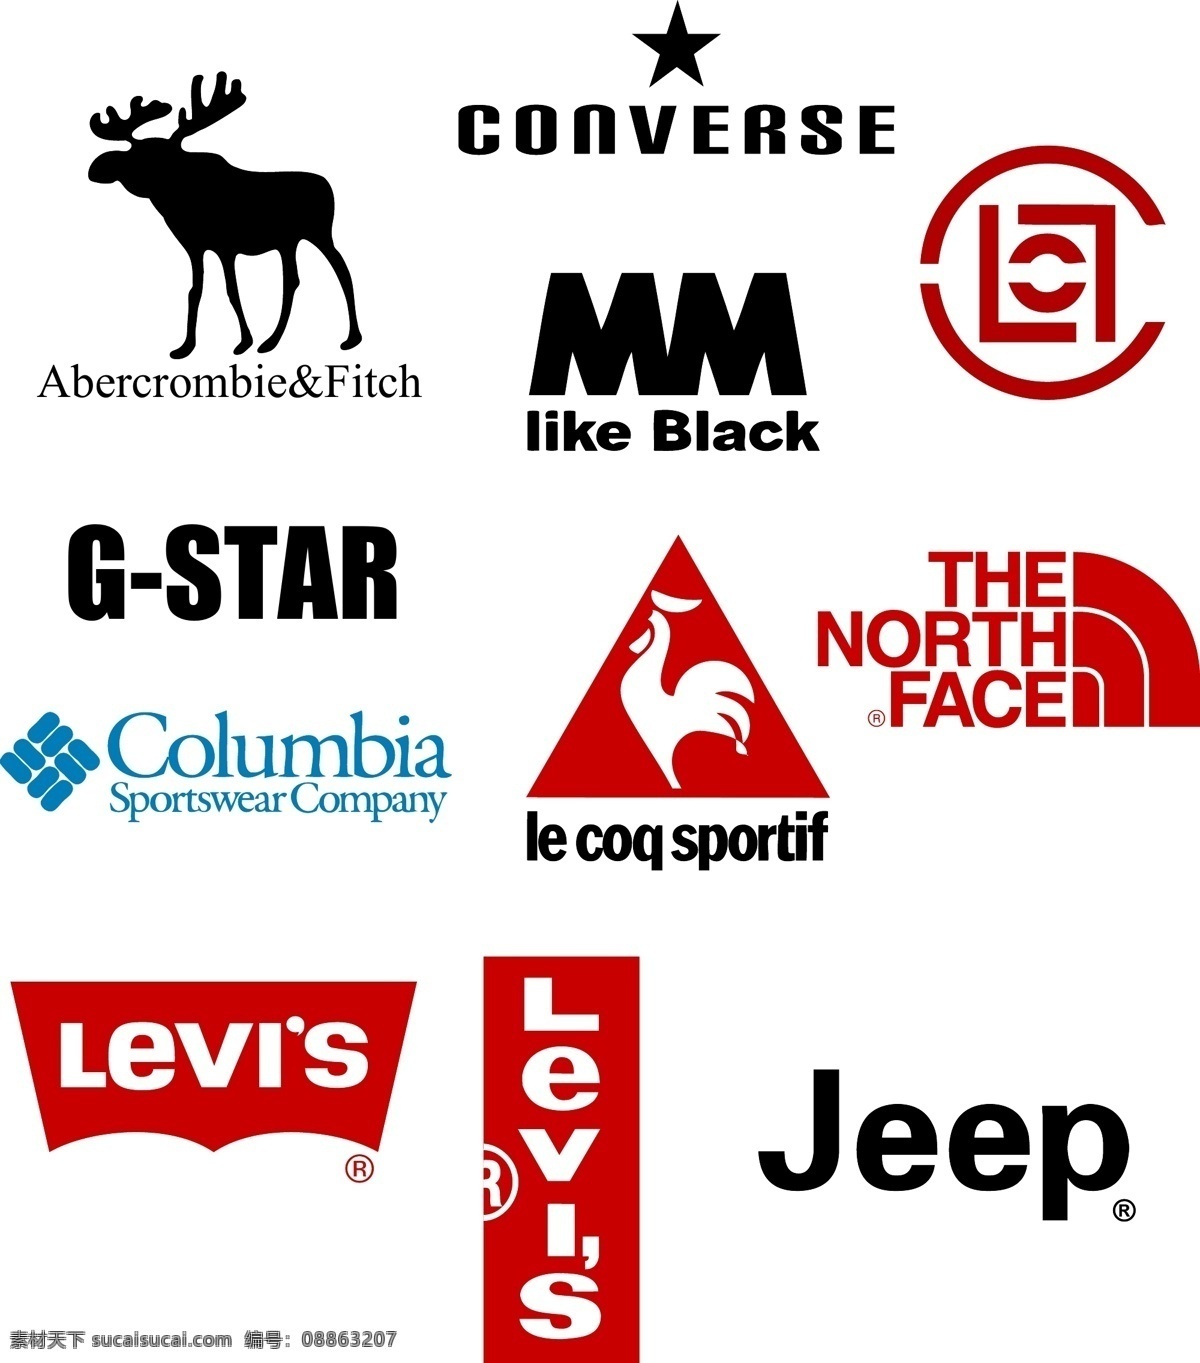 服装 品牌 格式 标志 logo af jeep converse g star 法国公鸡 levi 39 s columbia clot 企业 标识标志图标 矢量